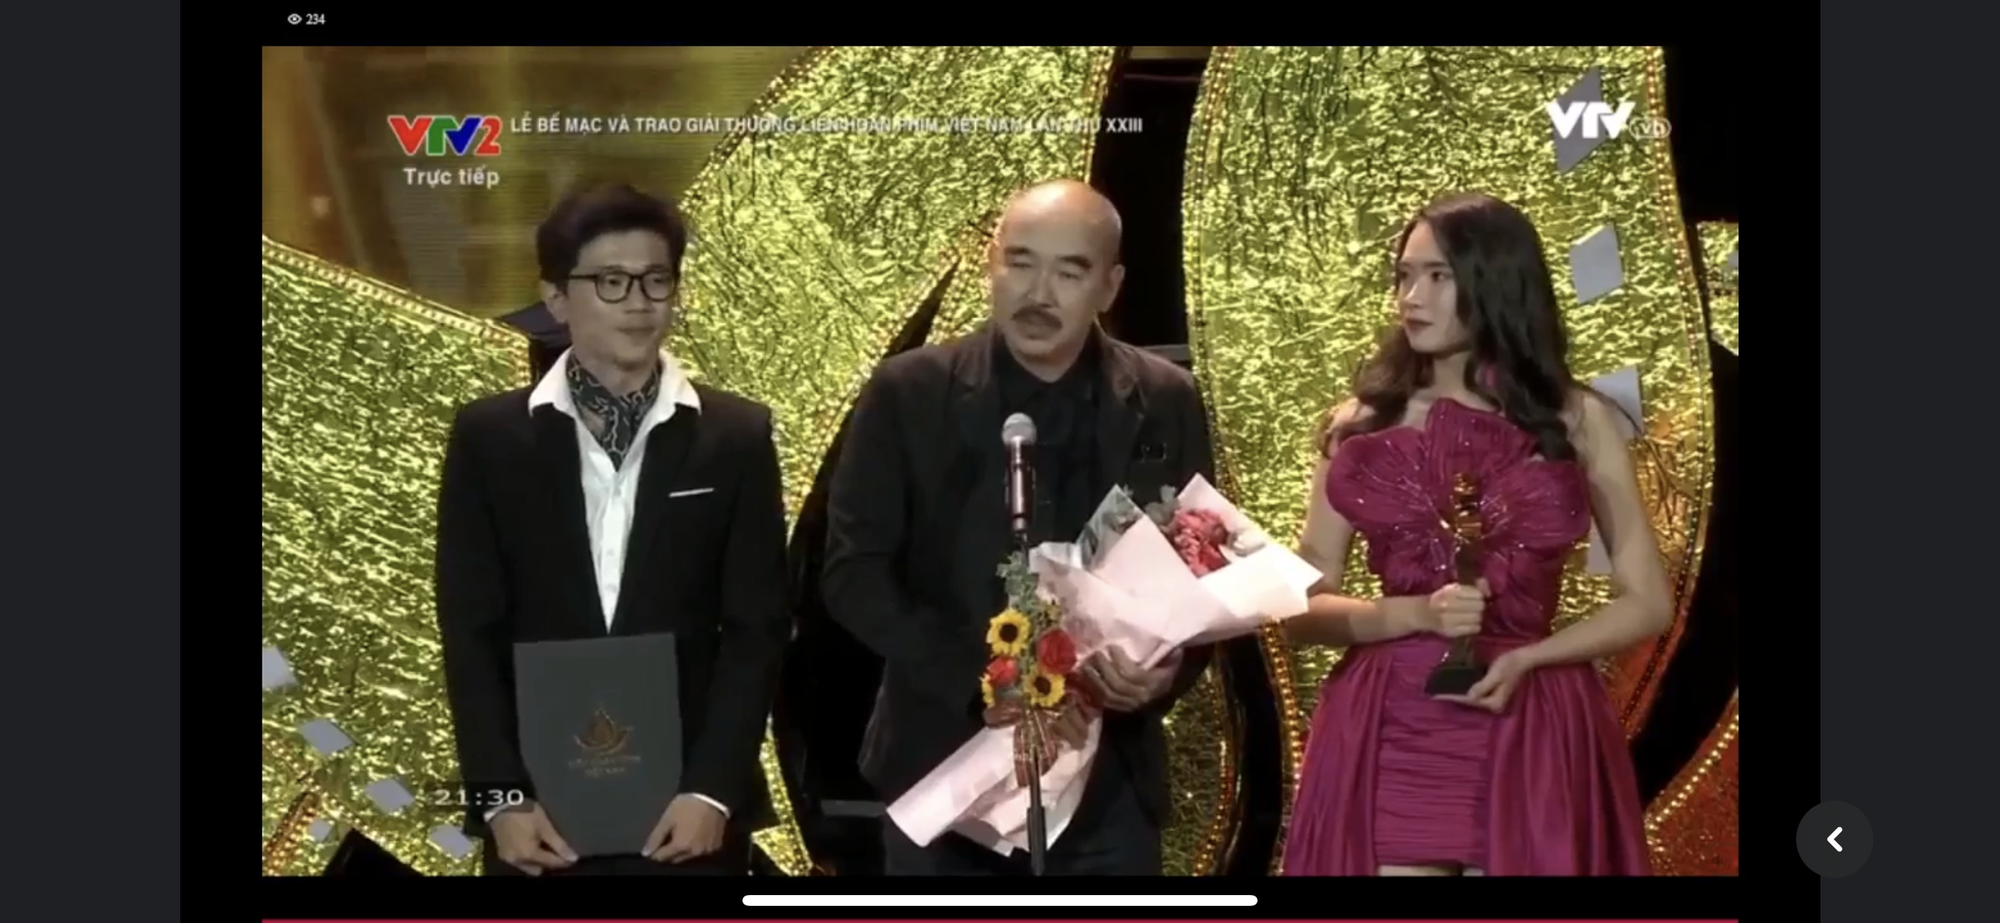 Tro Tàn Rực Rỡ đại thắng Bông Sen Vàng, Thái Hòa tiếp tục nhận thêm giải diễn xuất - Ảnh 2.